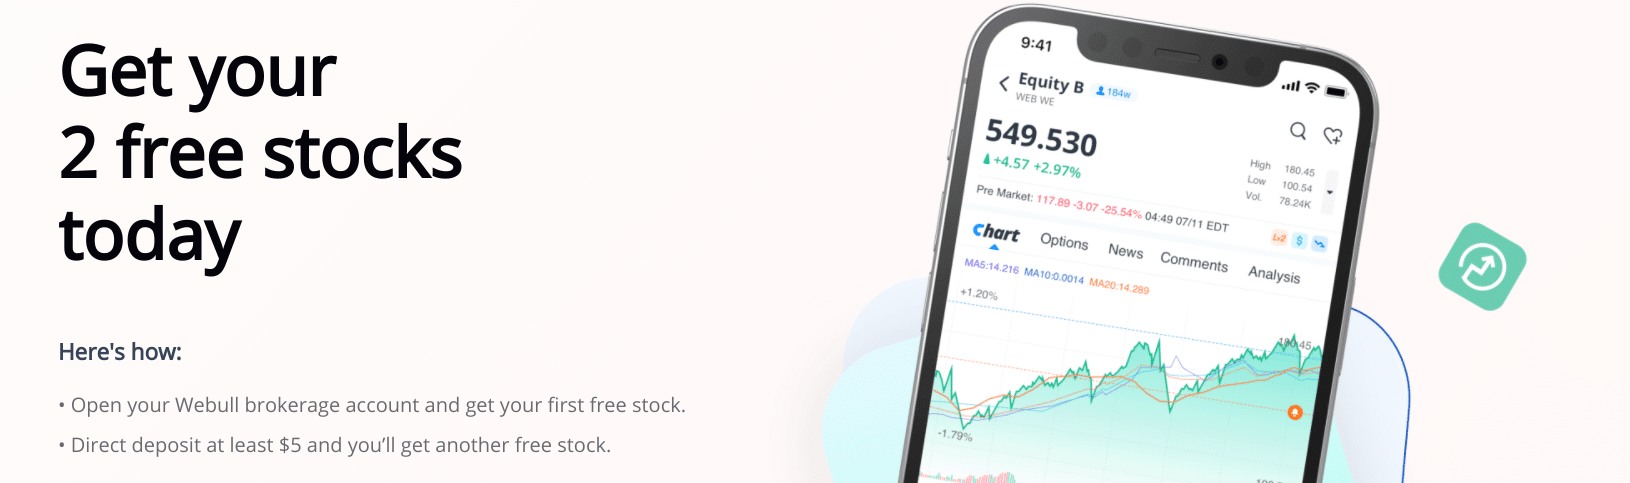 Webull free stocks